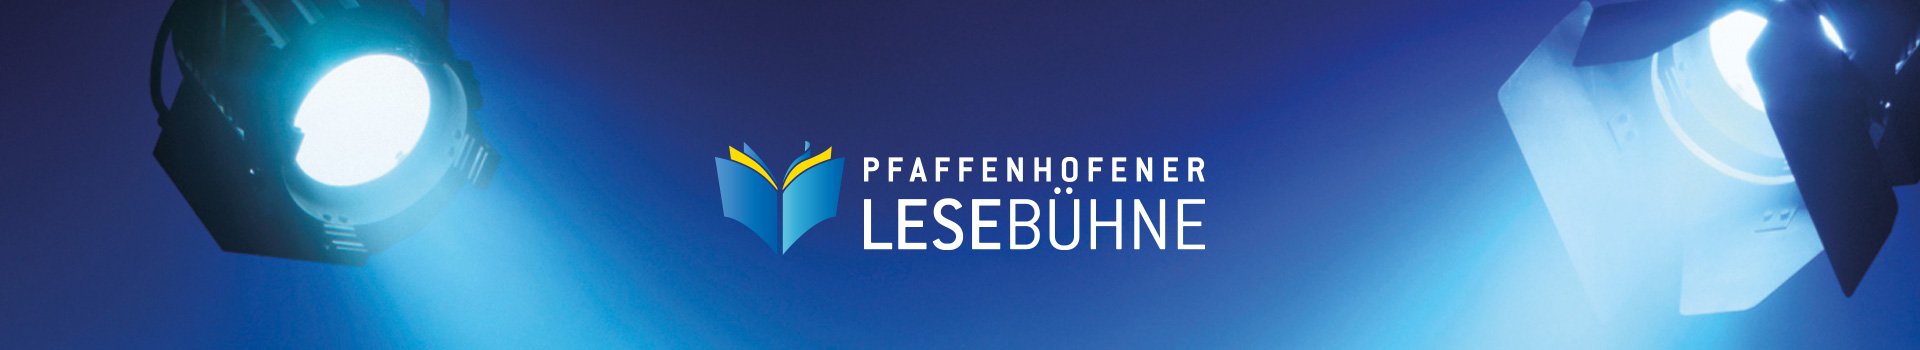 Pfaffenhofener Lesebühne 2019